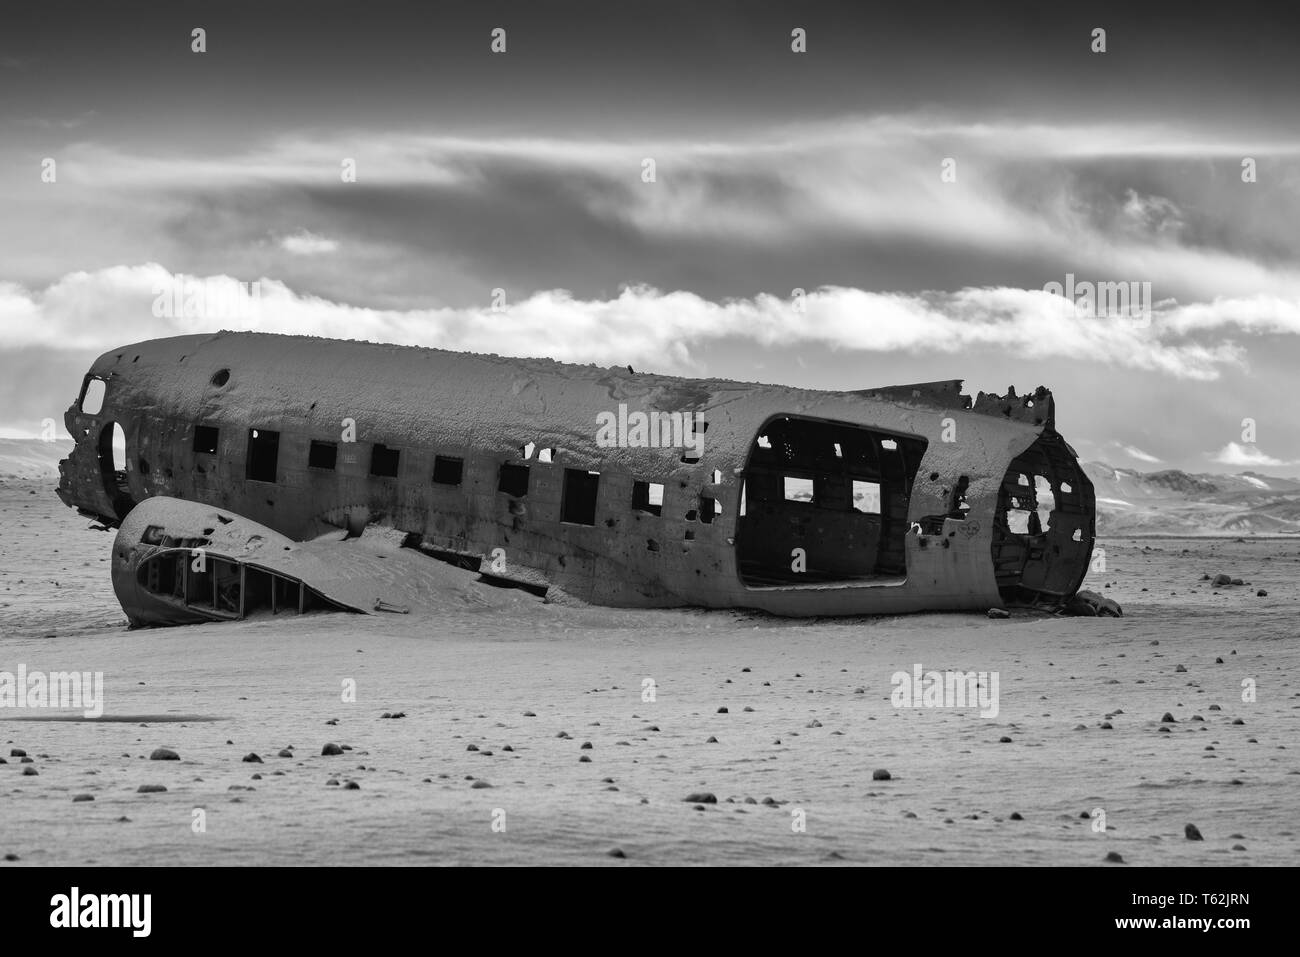 VIK, ISLANDE - 15 février 2019 - L'épave de l'avion s'est écrasé DC 3, recouvert de neige sur un jour d'hiver le 15 février 2019 à Vik, Islande Banque D'Images